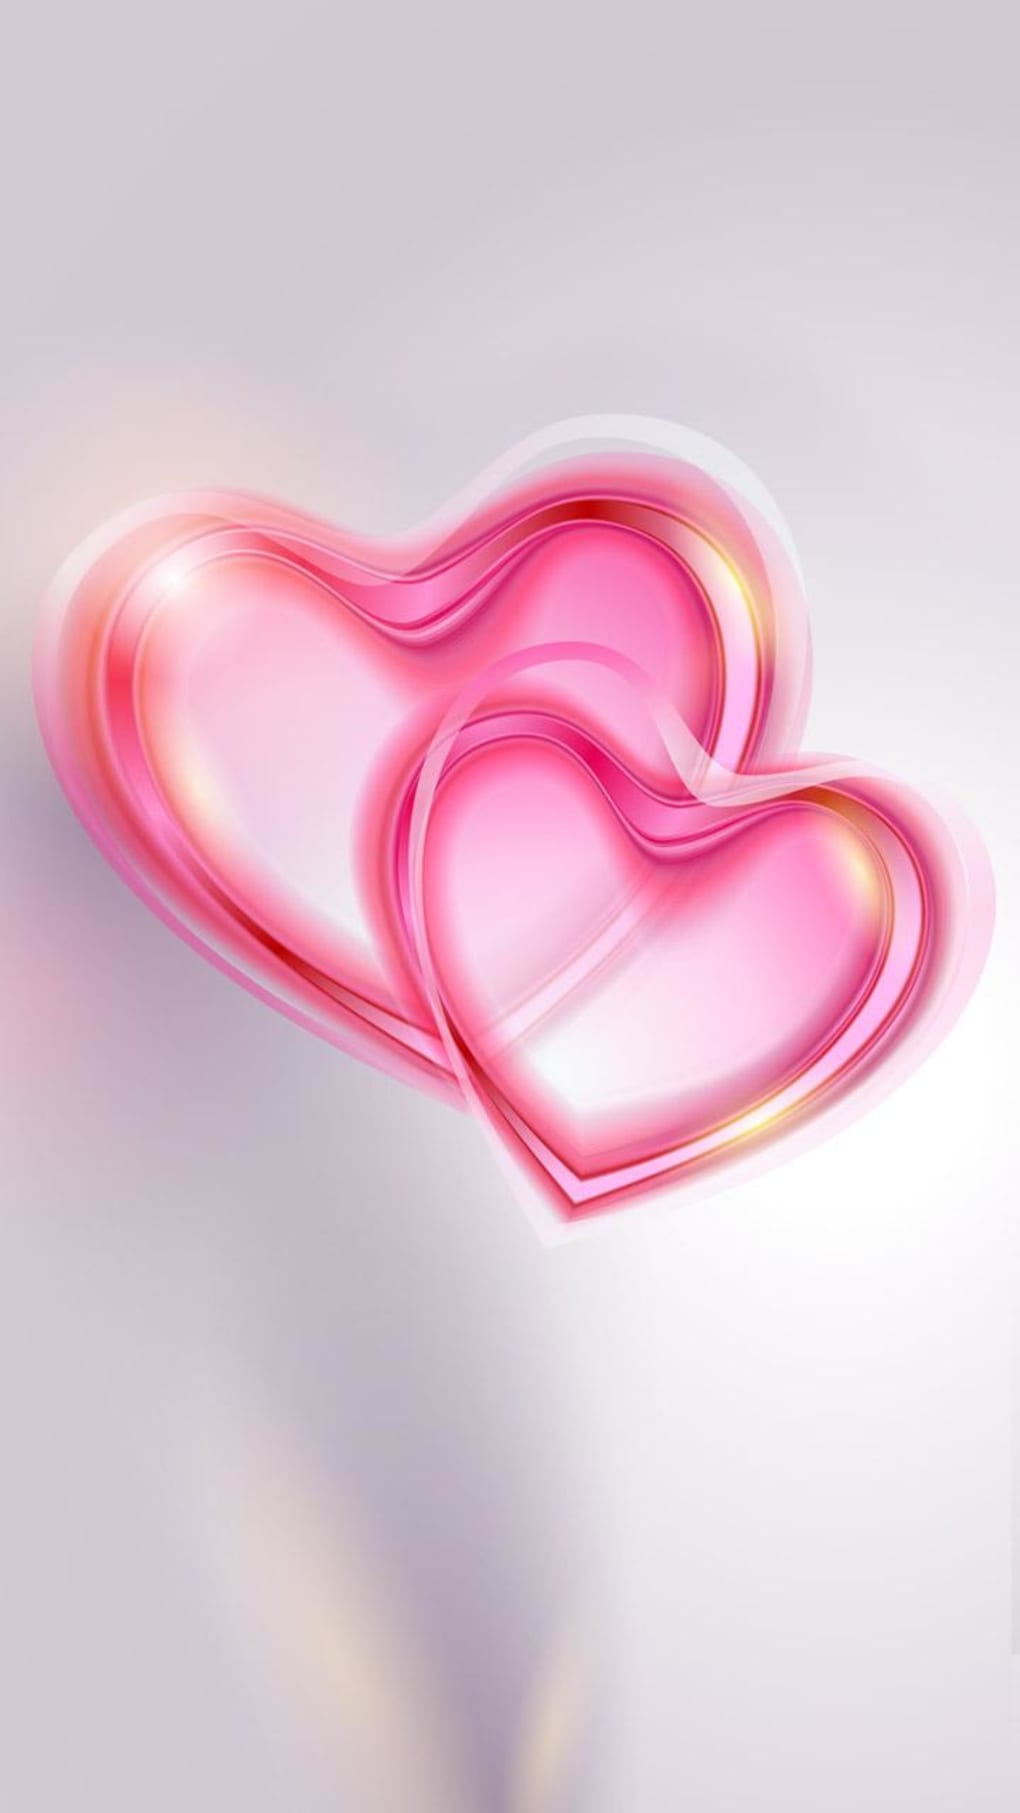 Descubre cómo personalizar tu iPhone con corazones rosas: copia y pega fácilmente